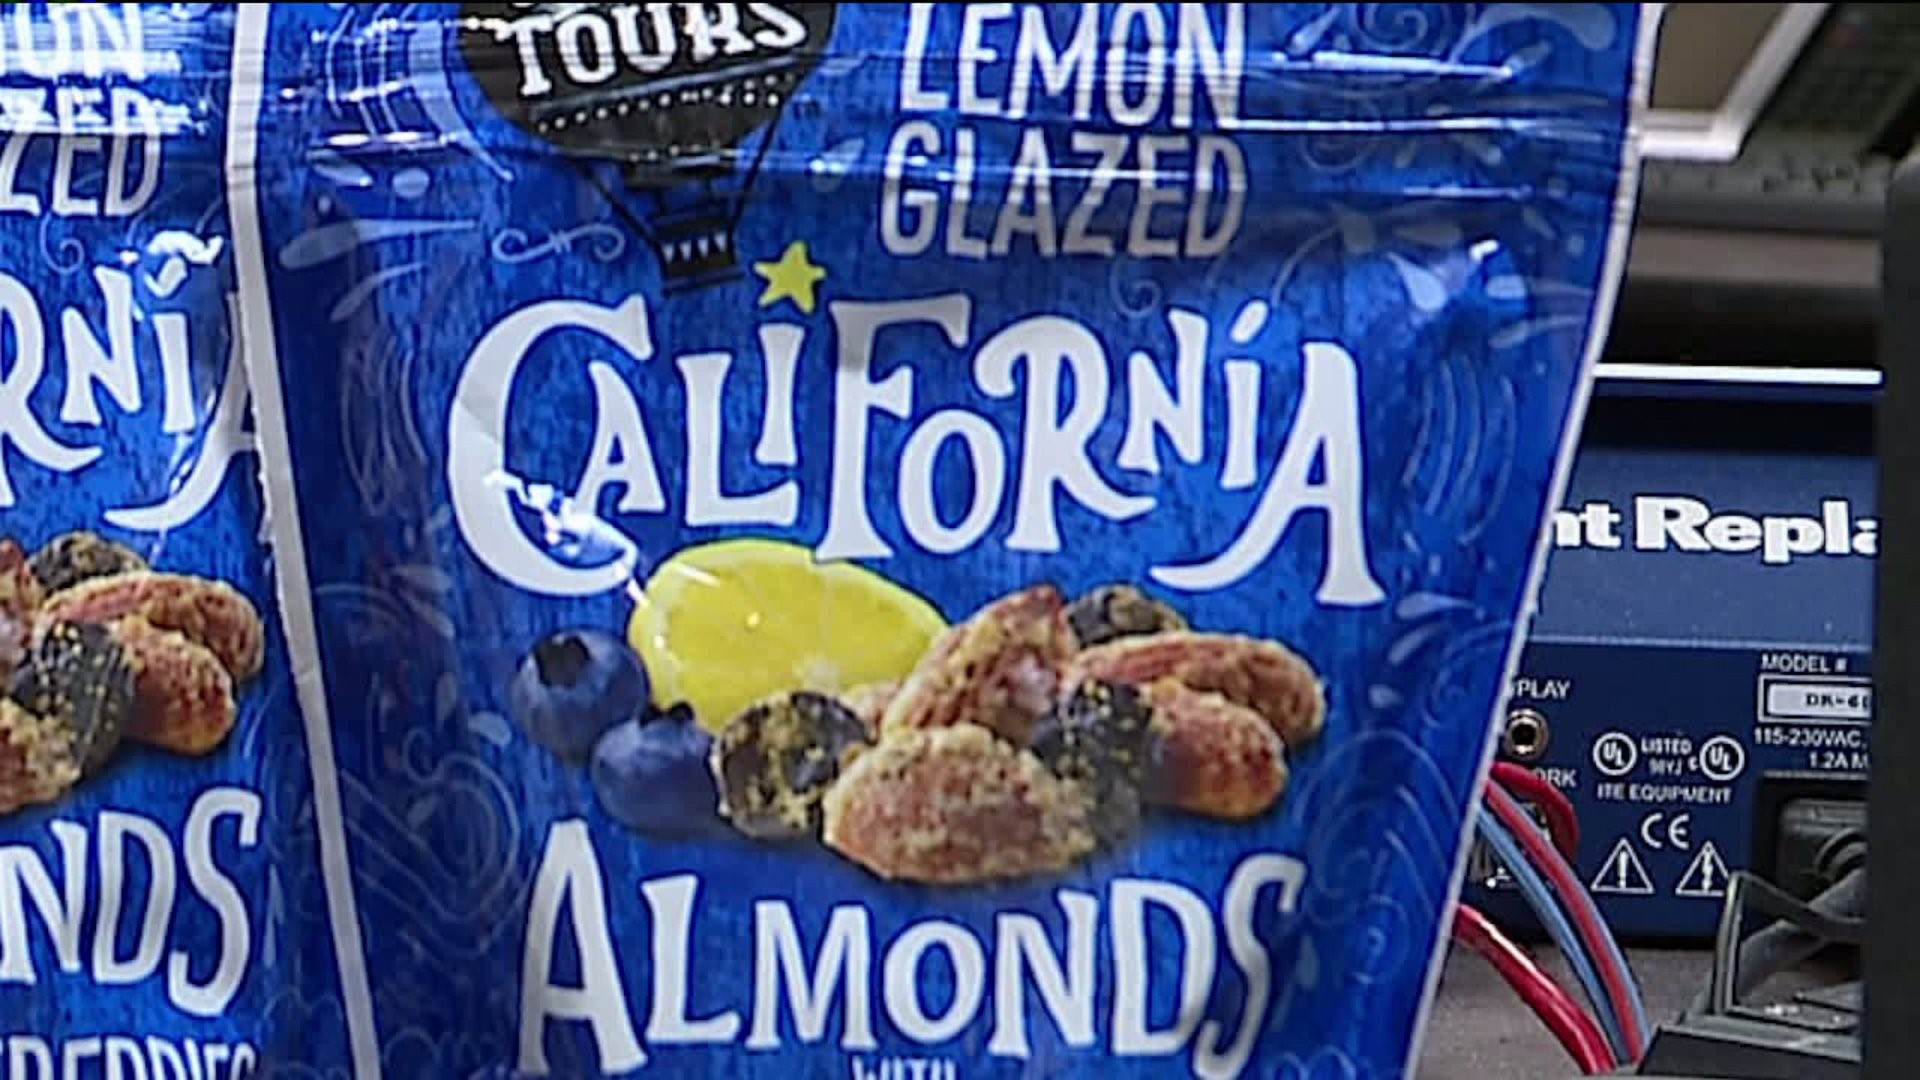 Taste Test: Lemon Glazed Almonds